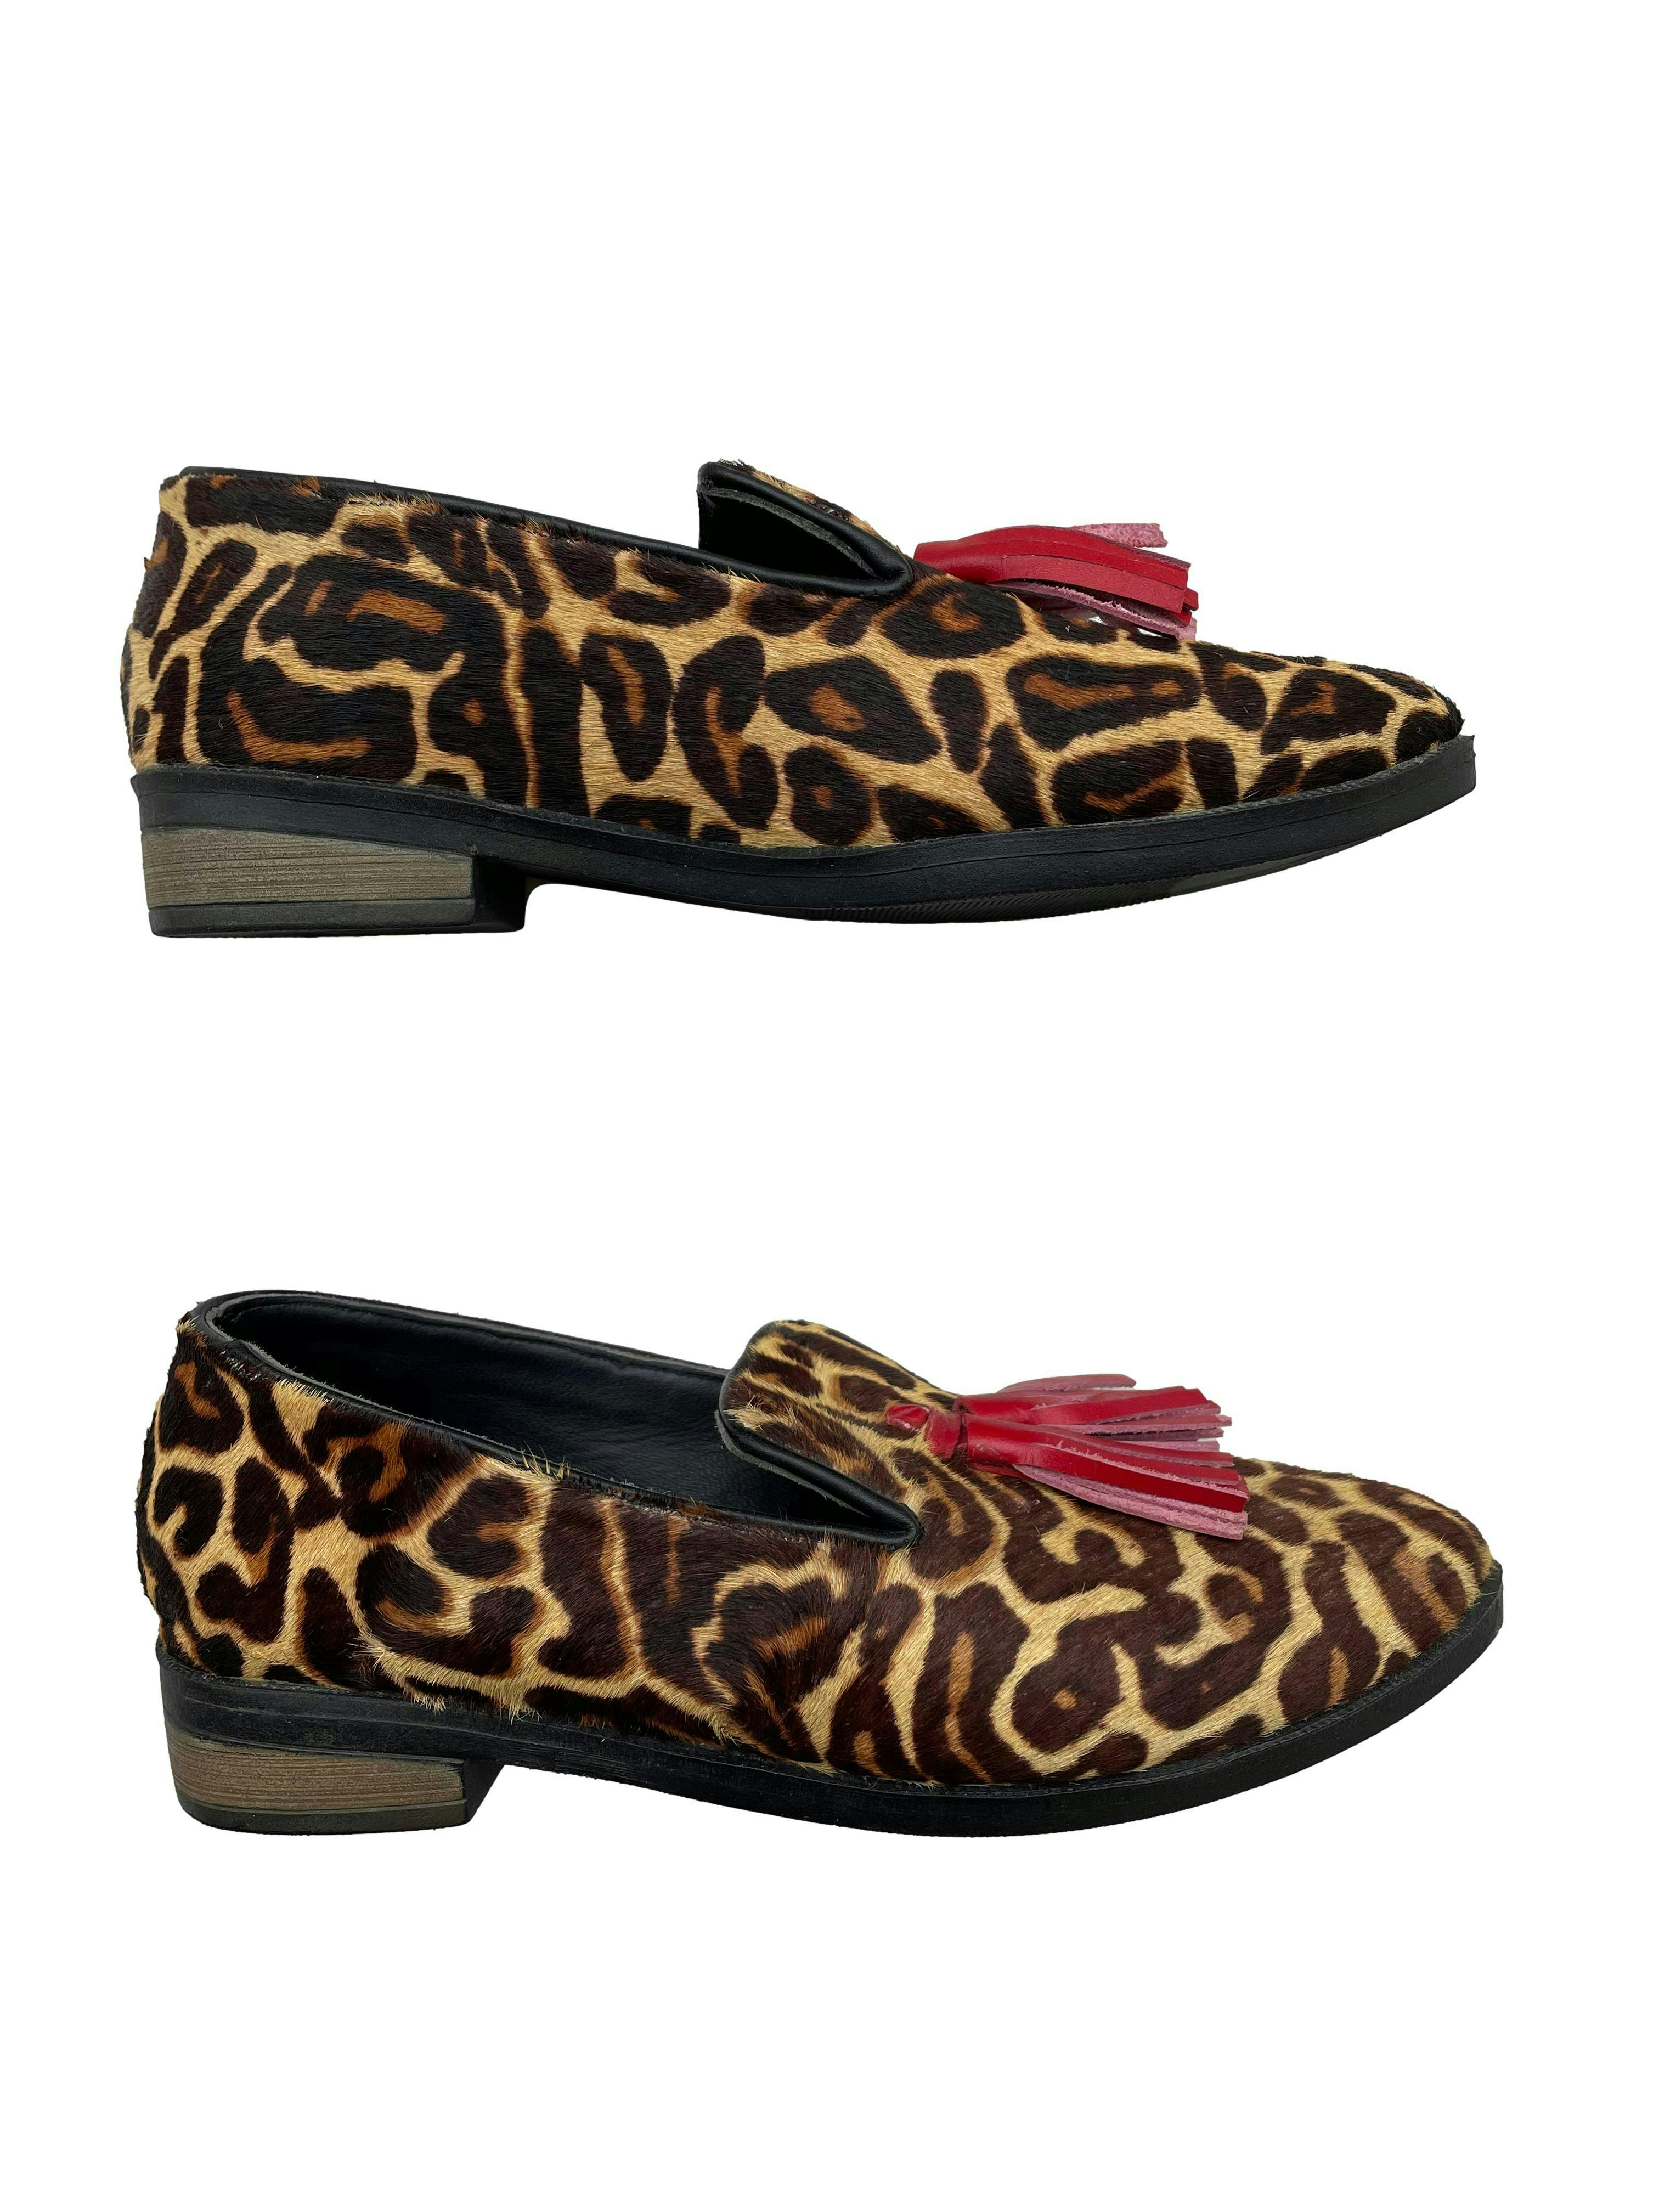 Mocasines Trendy Shoes animal print efecto pelo con borlas rojas. Estado 9/10.